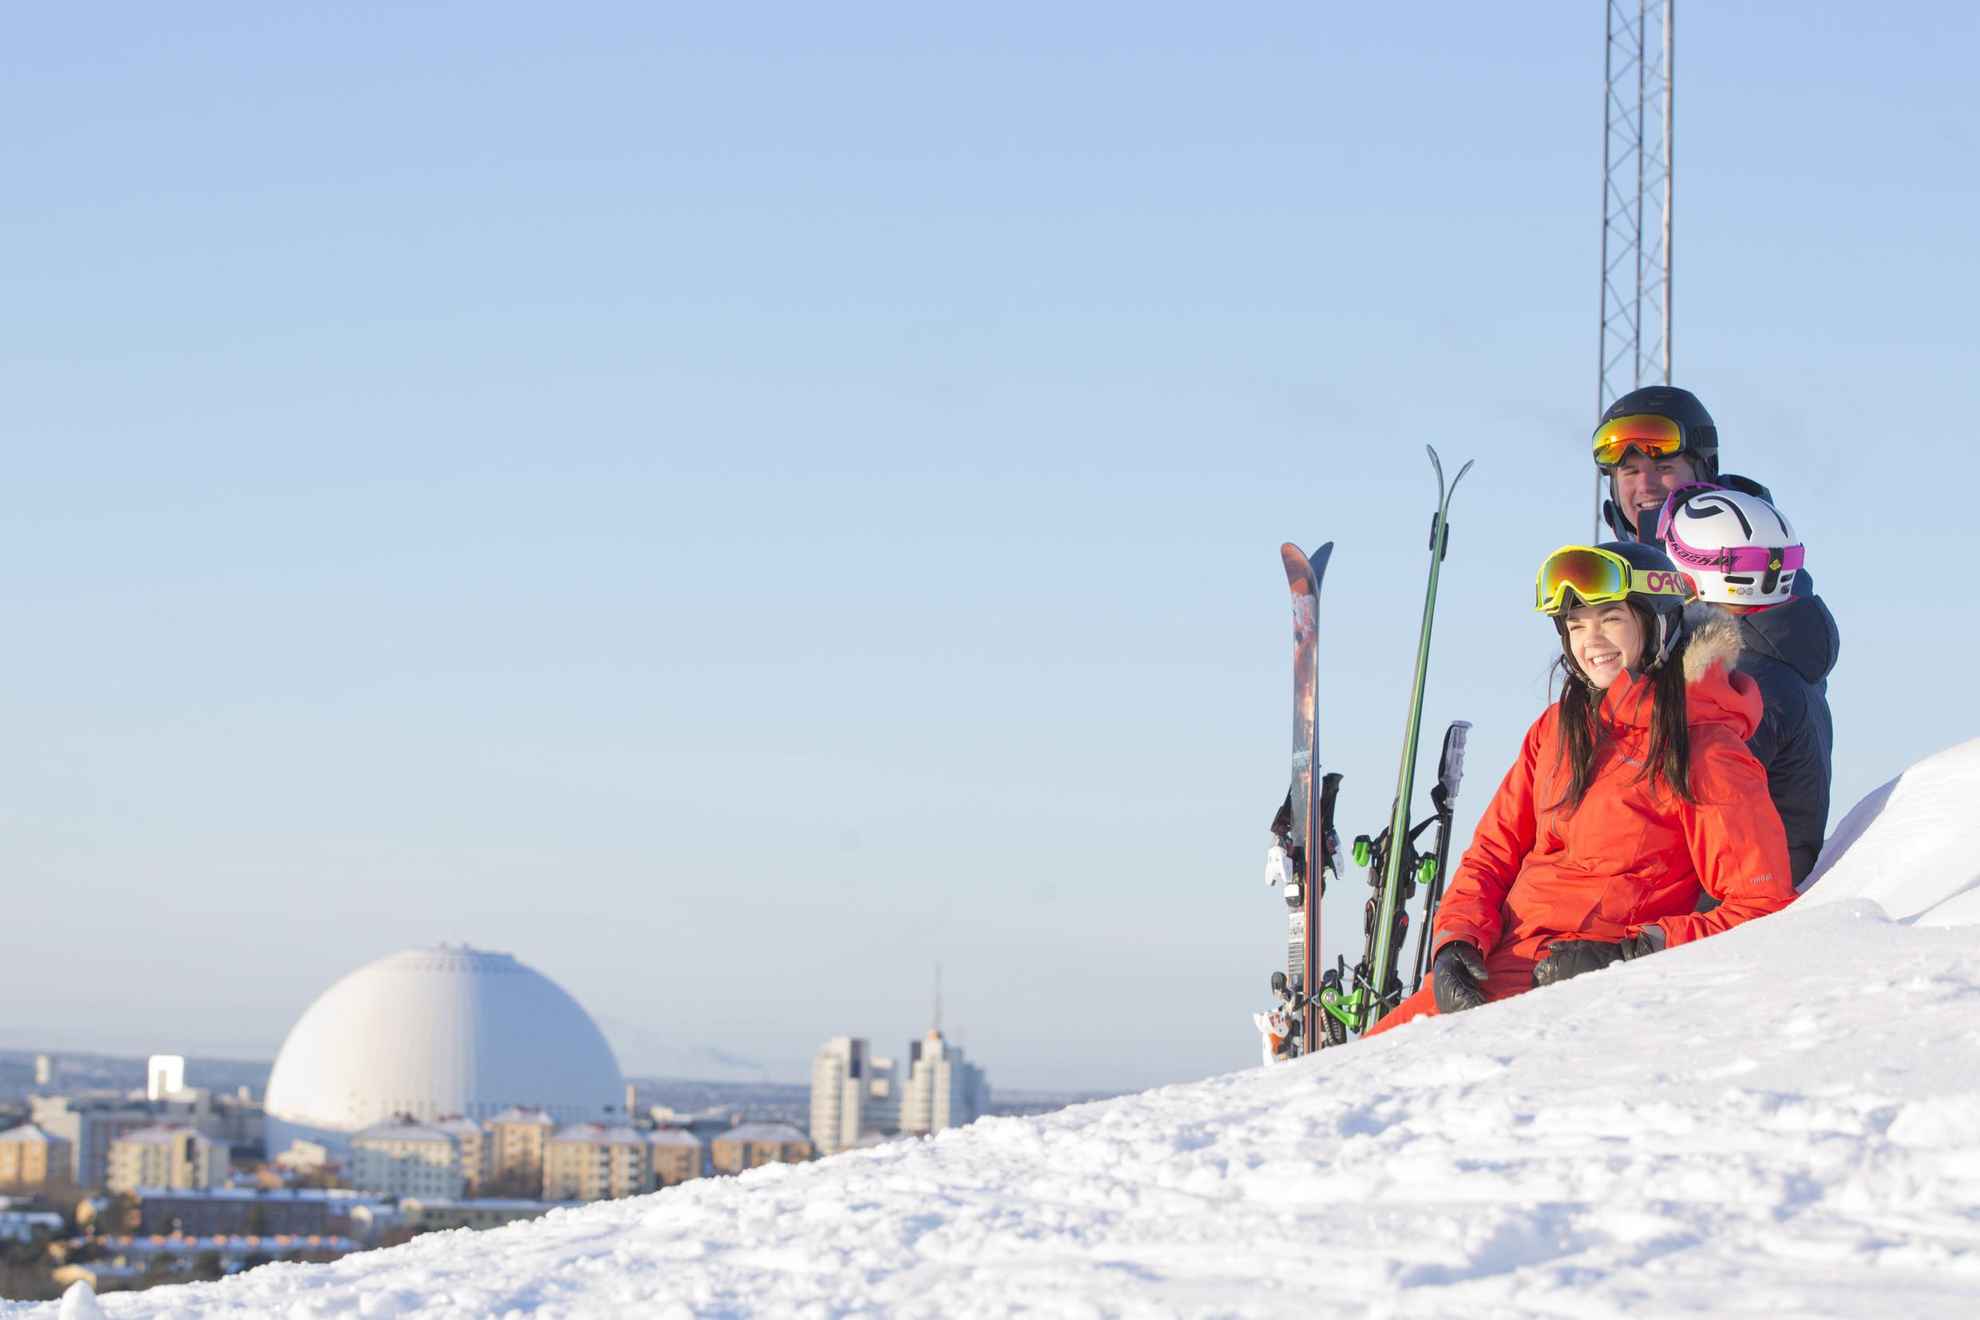 Trois personnes en tenue de ski se détendant dans la neige en profitant de la vue sur Stockholm.